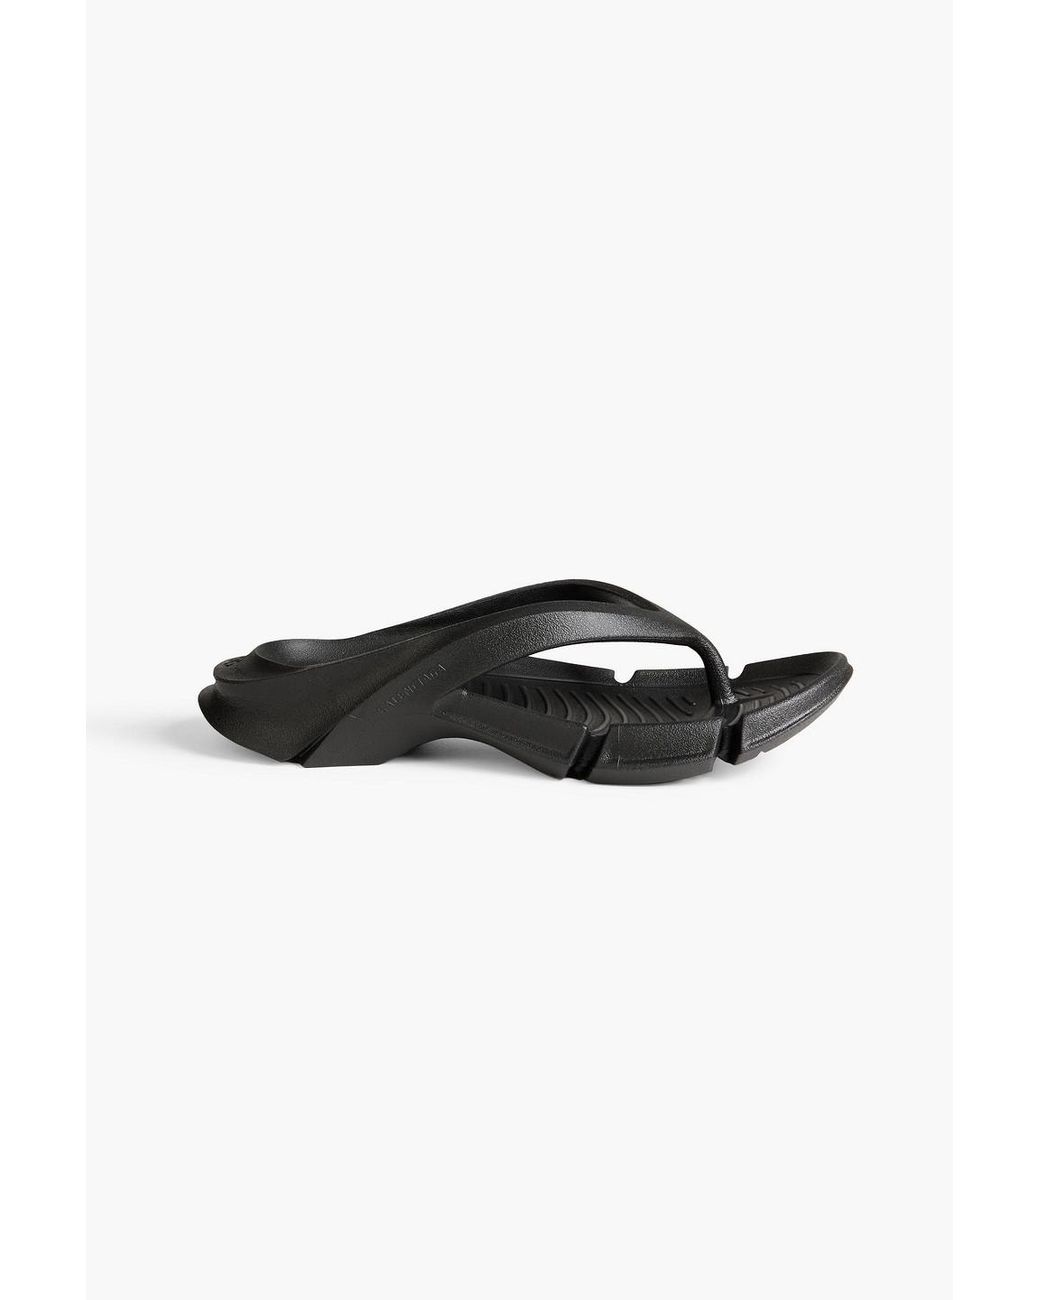 Balenciaga Women's Black Mold Rubber Flip Flops